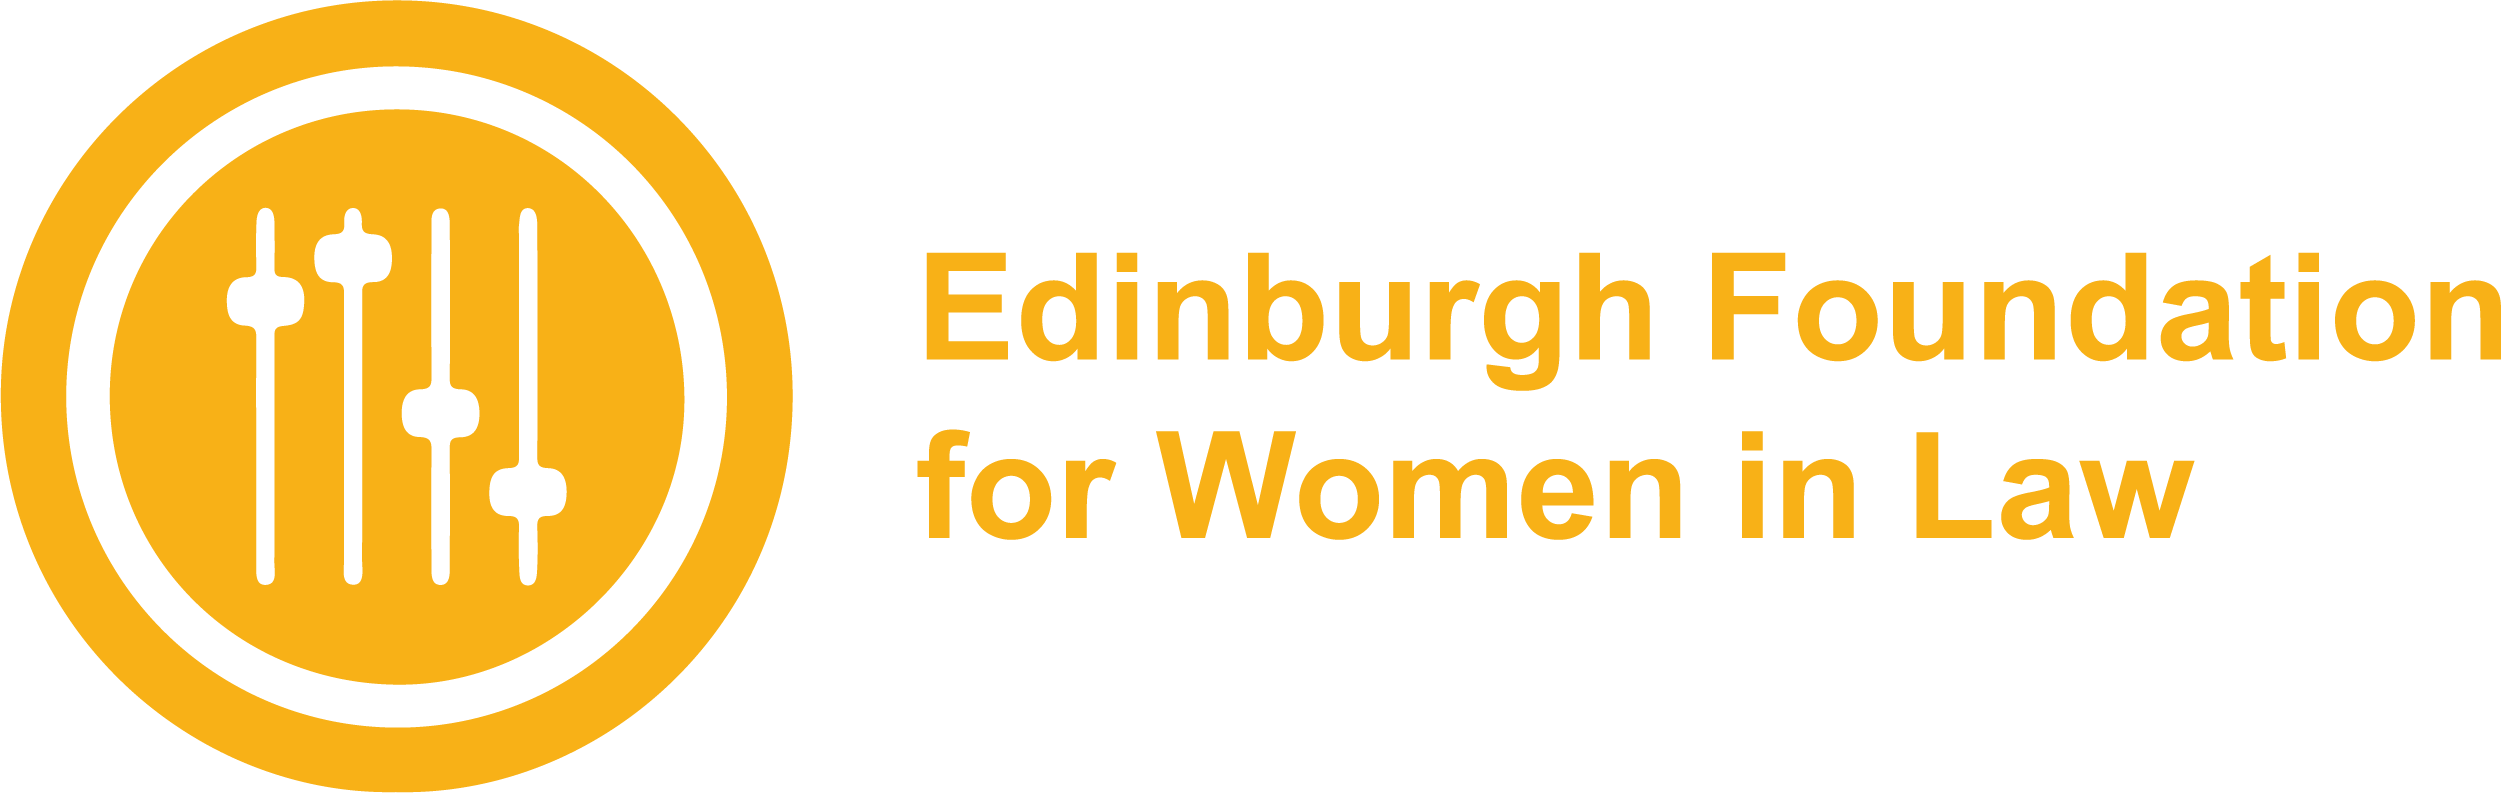 Edinburgh Foundation for Women in Law